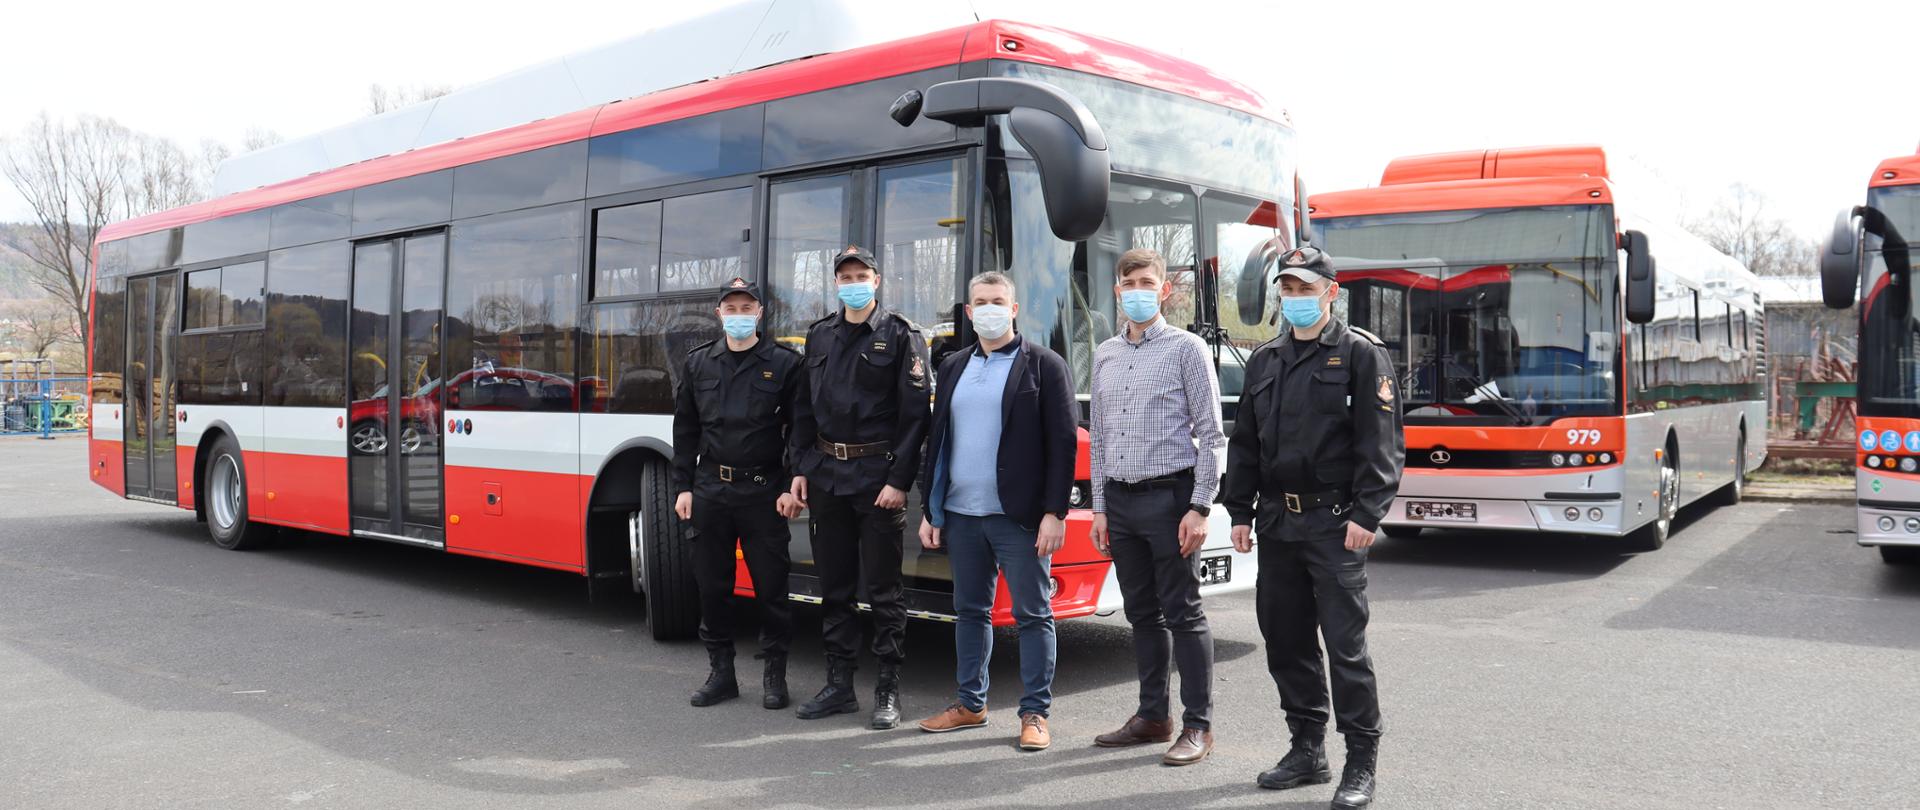 Zdjęcie przedstawia 5 osób - 3 funkcjonariuszy PSP oraz 2 pracowników firmy Autosan. Osoby stoją przed pojazdem - autobusem koloru czerwono - biało - czarnego. W tle zdjecia widać inne autobusy.